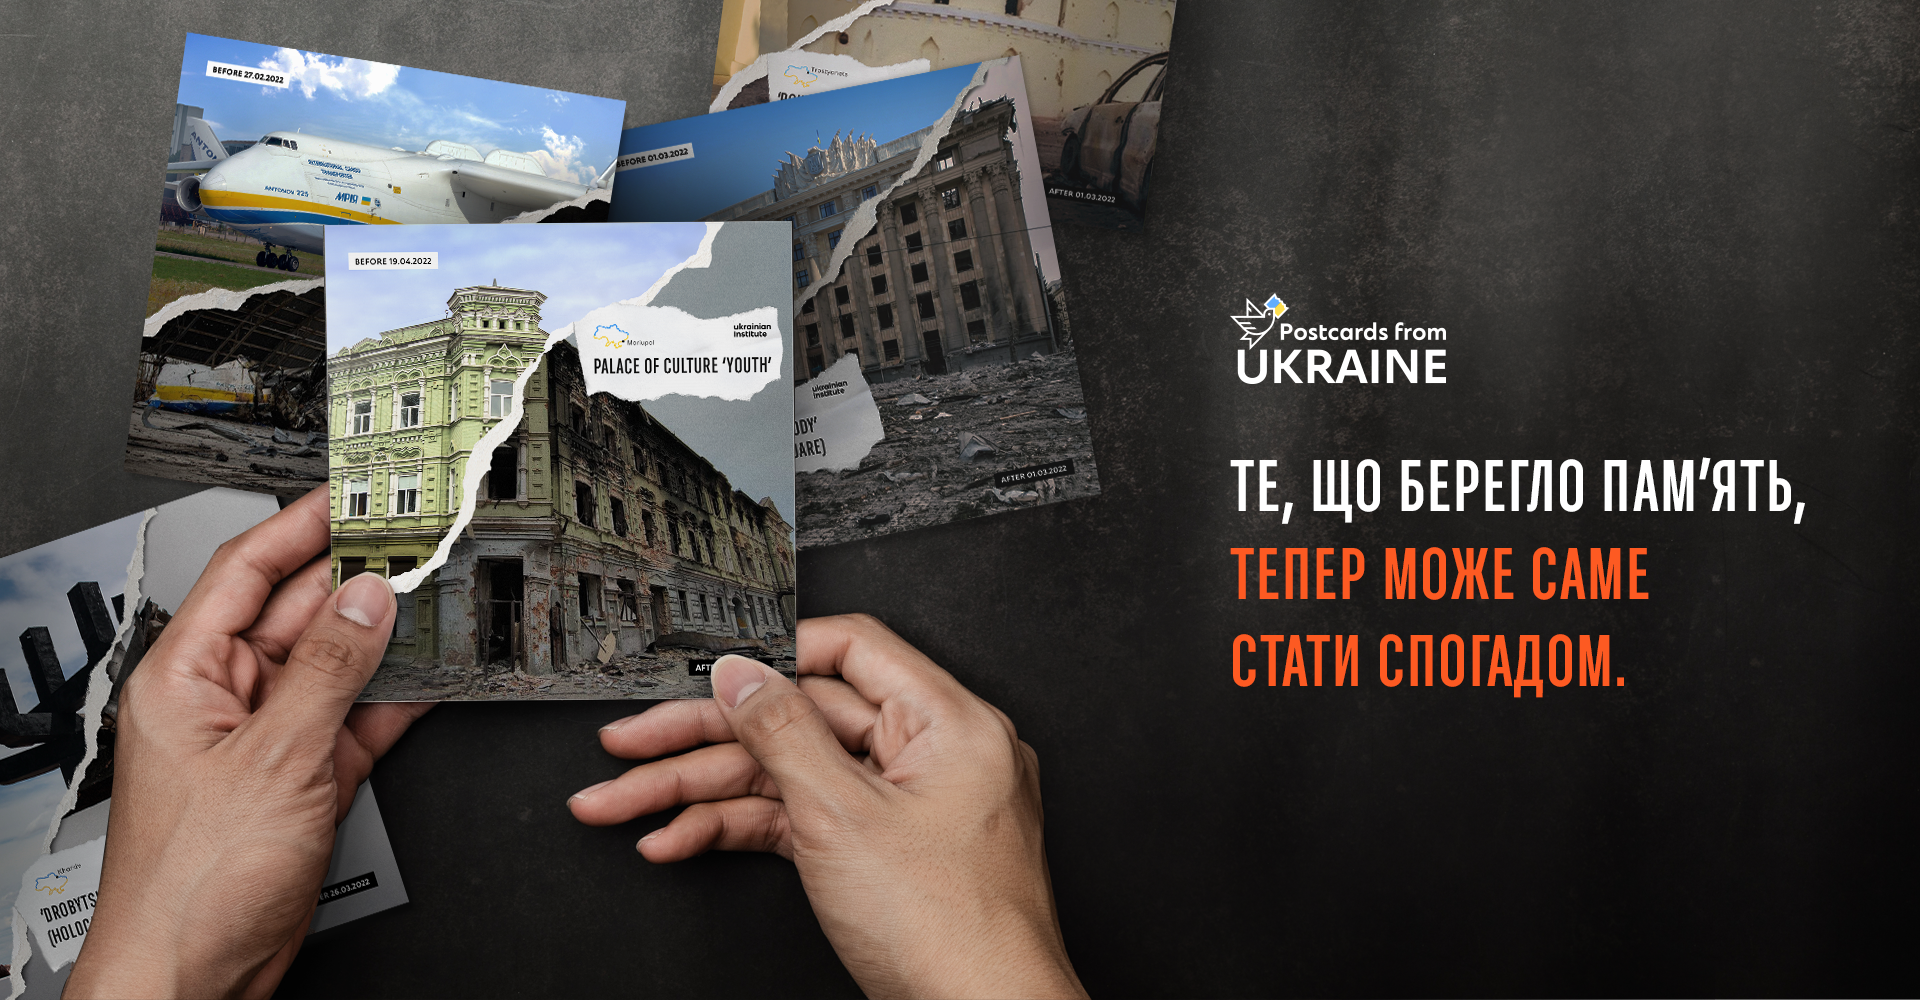 Postcards from Ukraine: украинско-американский хореограф Максим Чмерковский стал голосом разрушенного уникального памятника Черниговщины